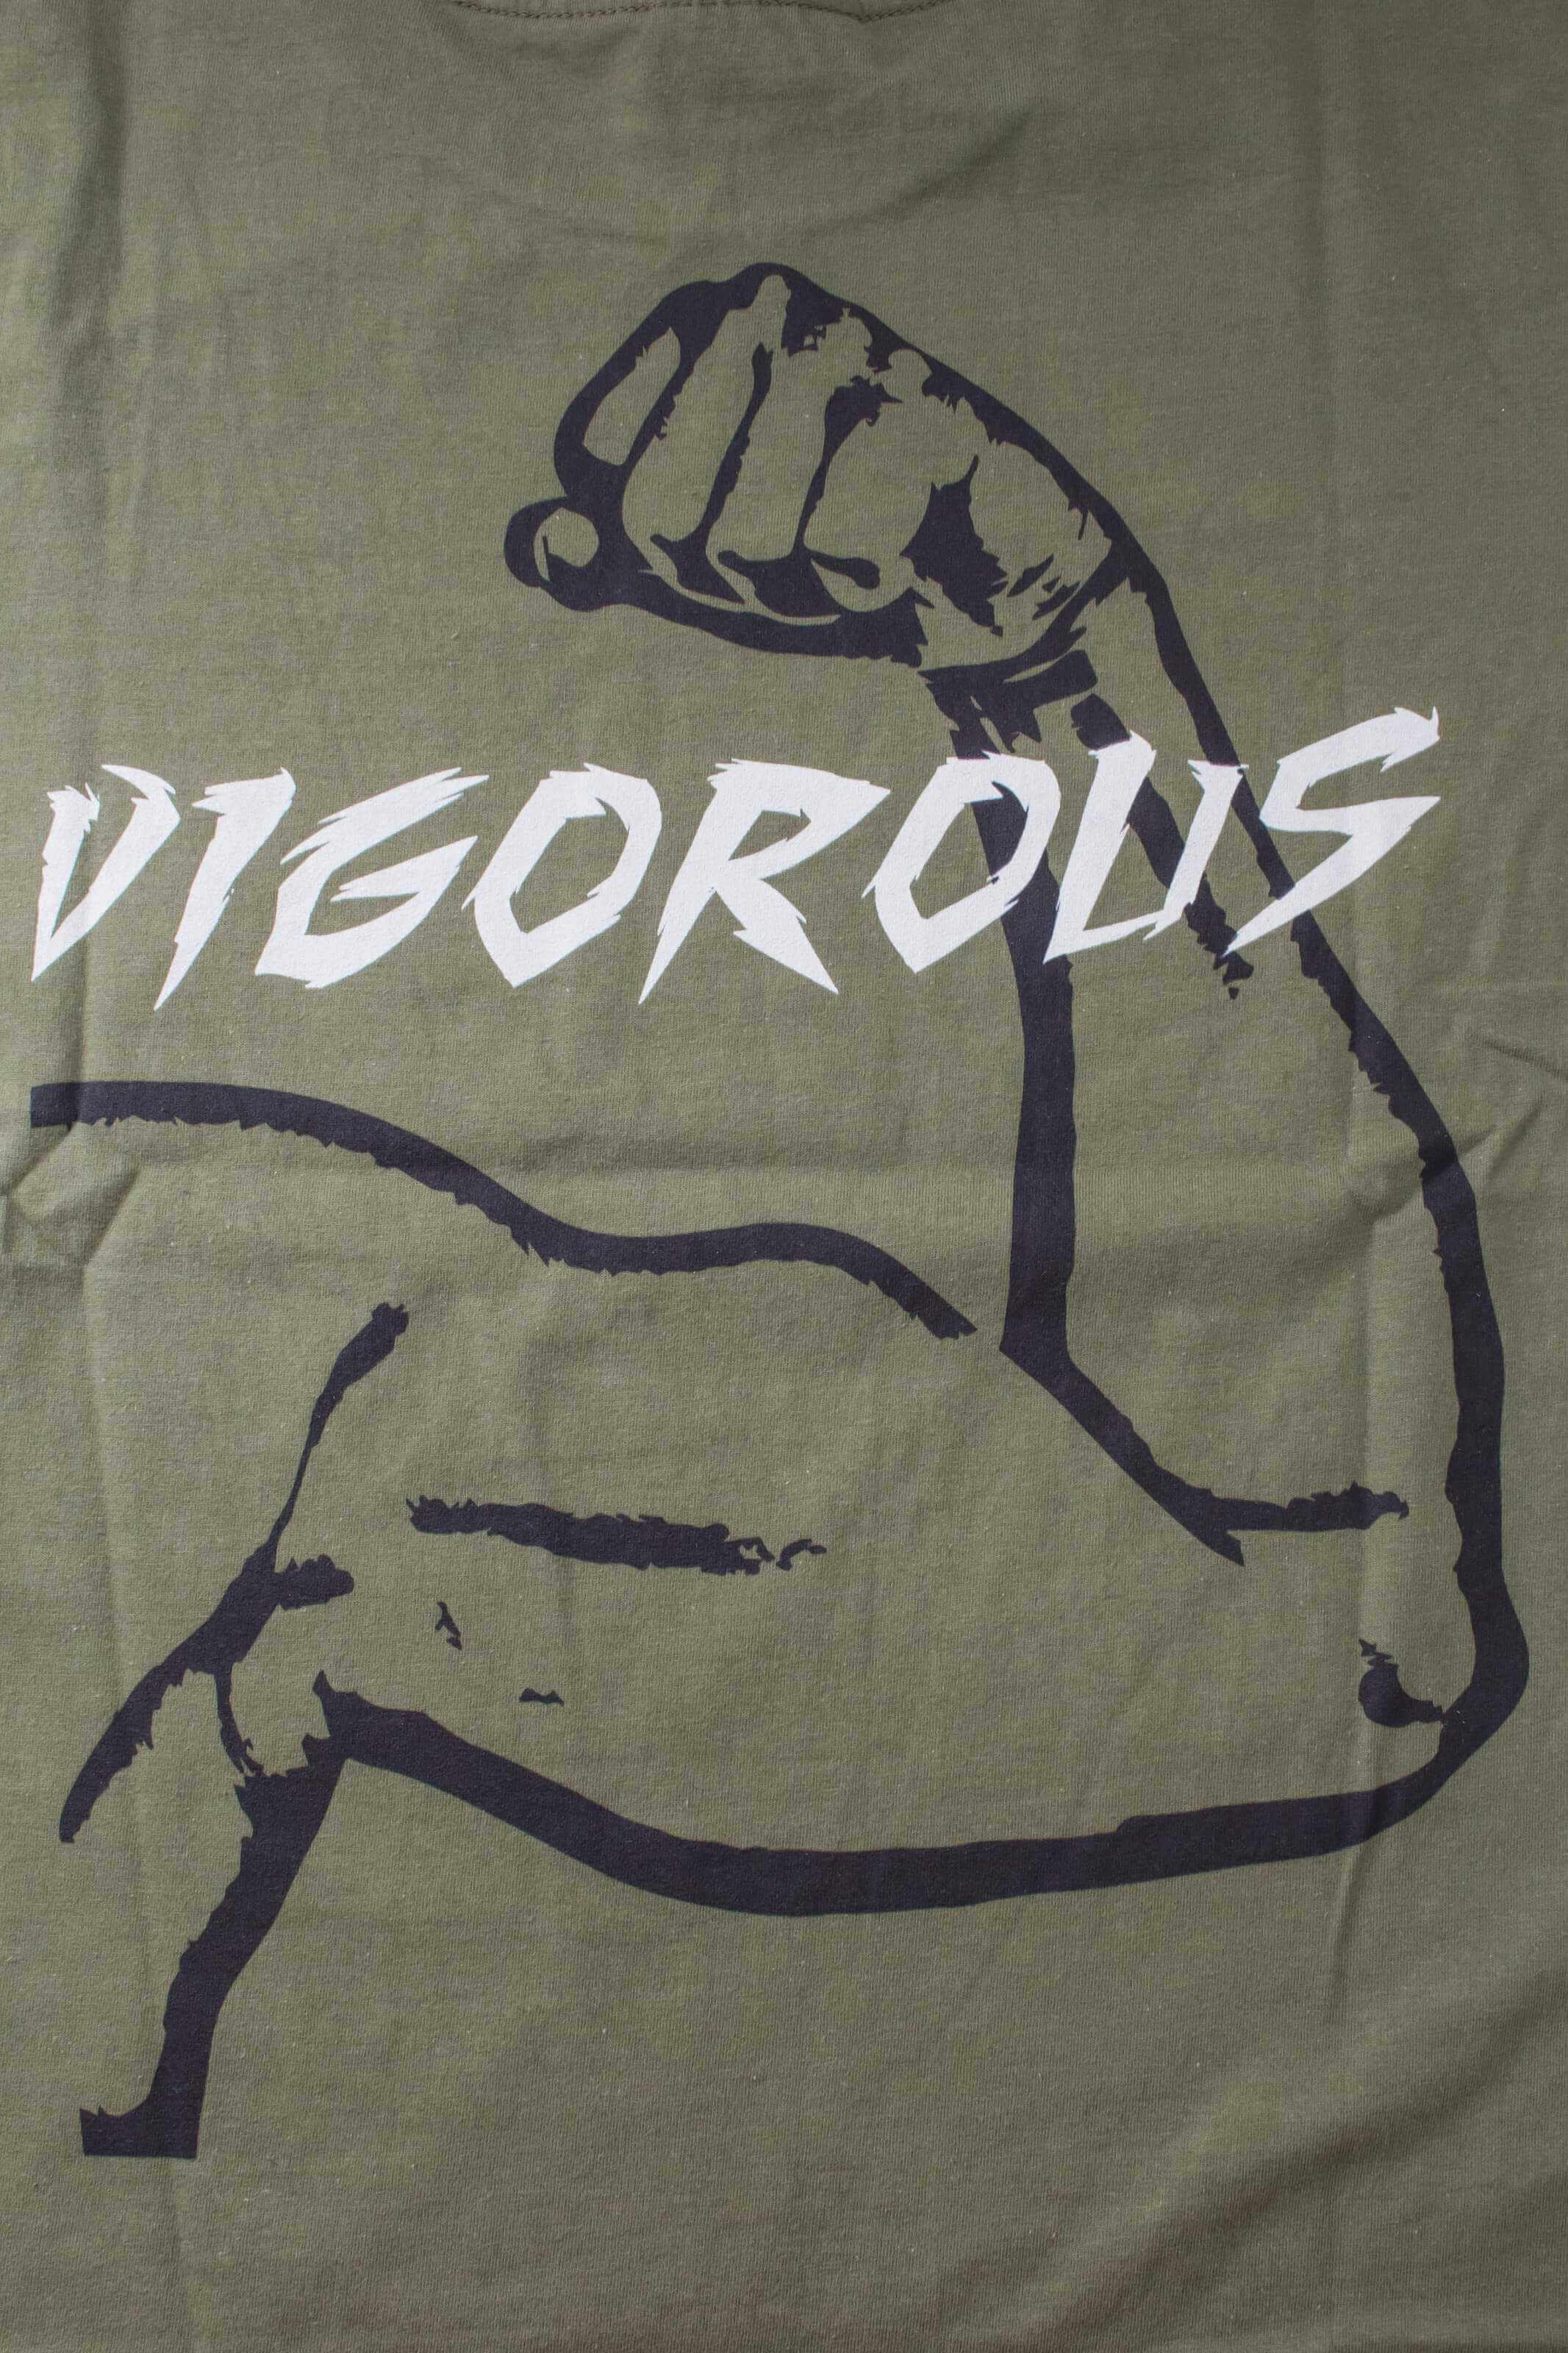  客製化T恤- VIGOROUS 客製T恤的第4張圖(客製化公司制服、班服製作、團體服製作等示意或作品圖)